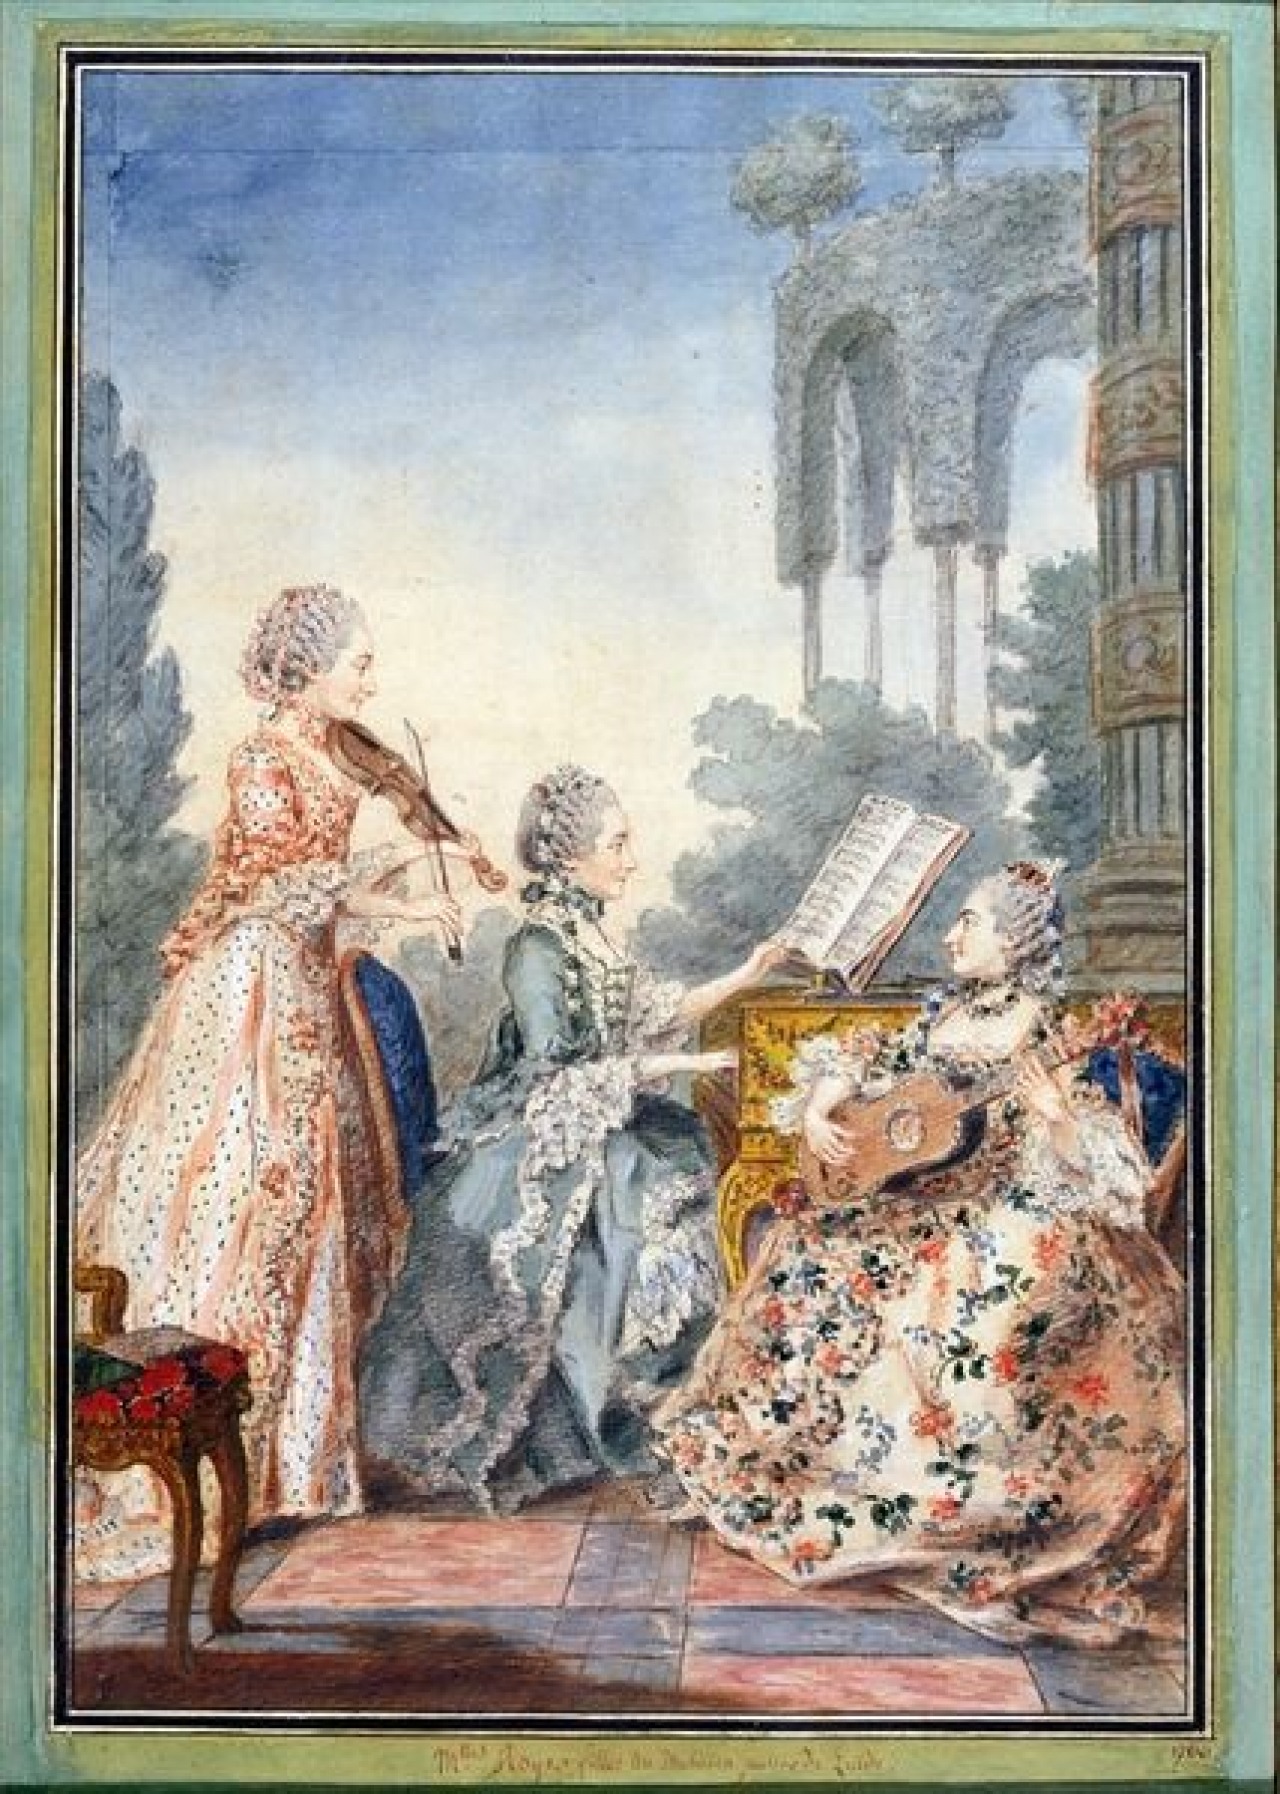 Women's Fashion: Rococo  Fashion and Decor: A Cultural History